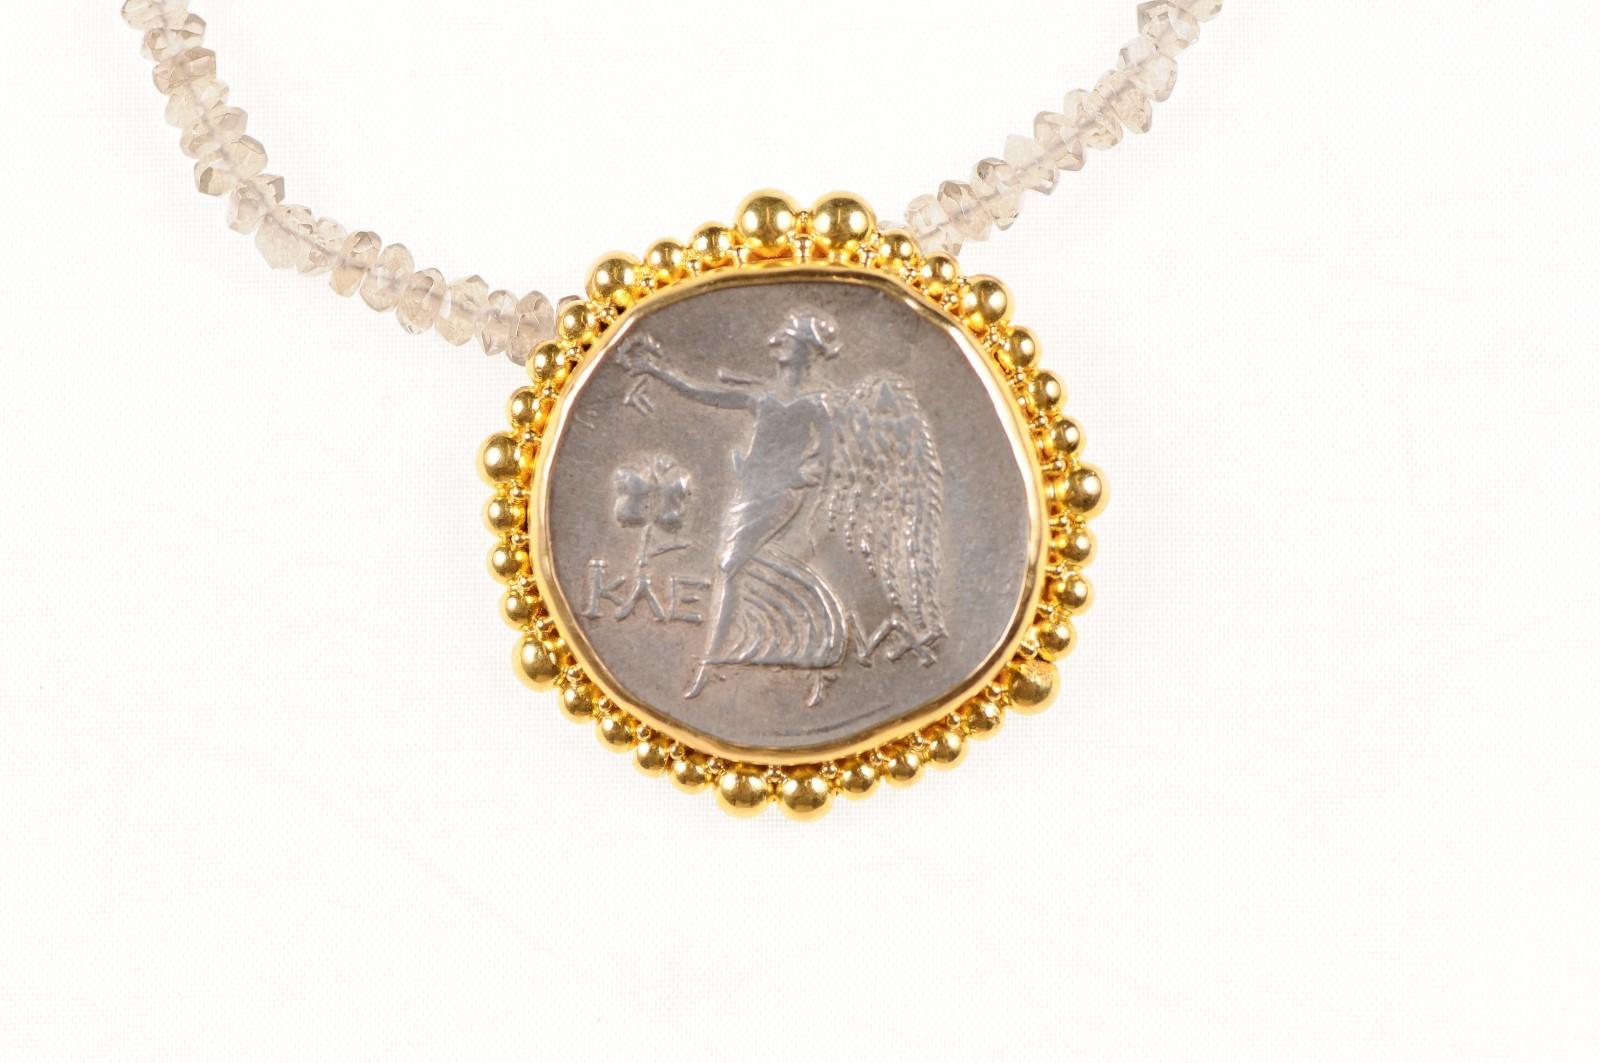 Eine authentische griechische, PAMPHYLIA (Eski-Adalia) AR Tetradrachme Münze, Kleuch Magistrat (ca. 183-175 v. Chr.), in einem runden, wellenförmigen Wulst eingefasst 22k Gold Lünette mit 22k Gold Bügel. Die Vorderseite dieser Münze zeigt den Kopf